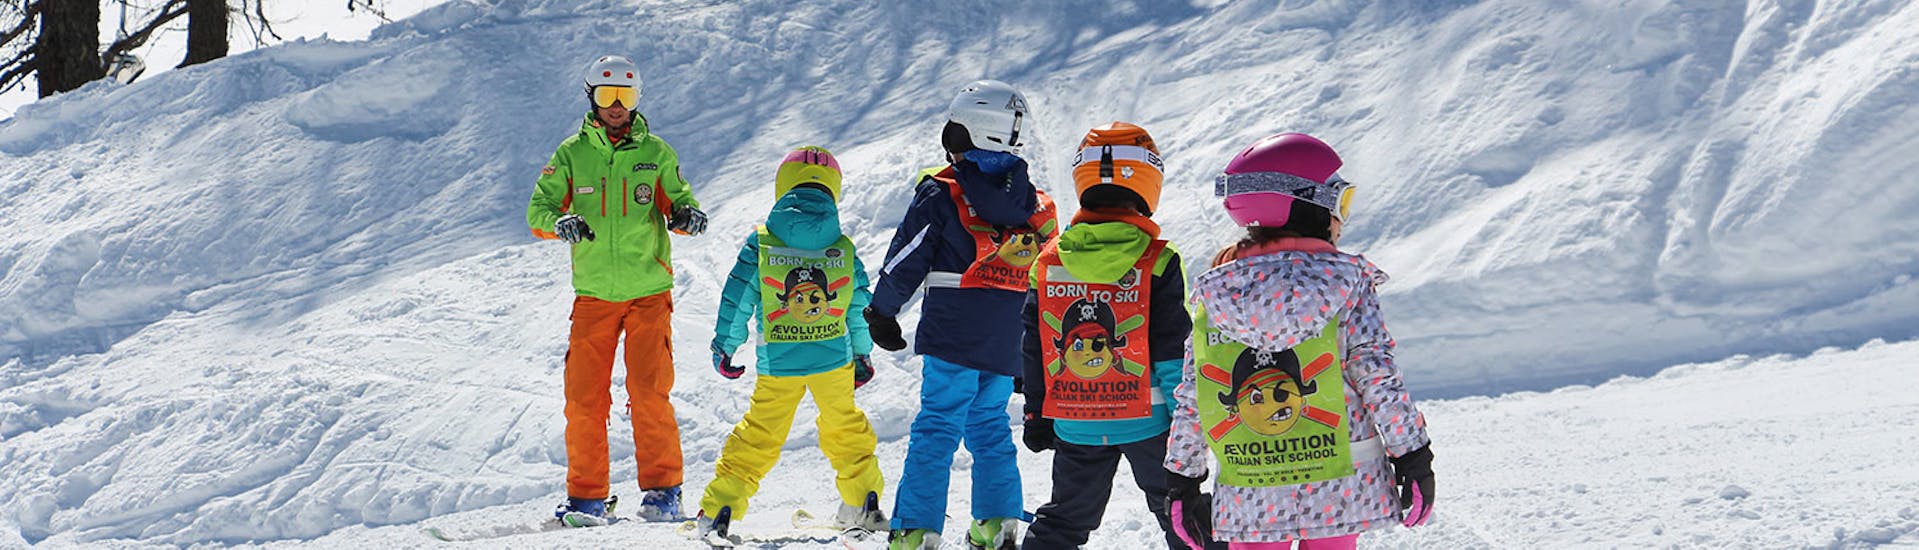 Moniteurs de ski et enfants sur les pistes de Folgarida pendant l'un des cours de ski pour enfants de tous niveaux d'une journée.